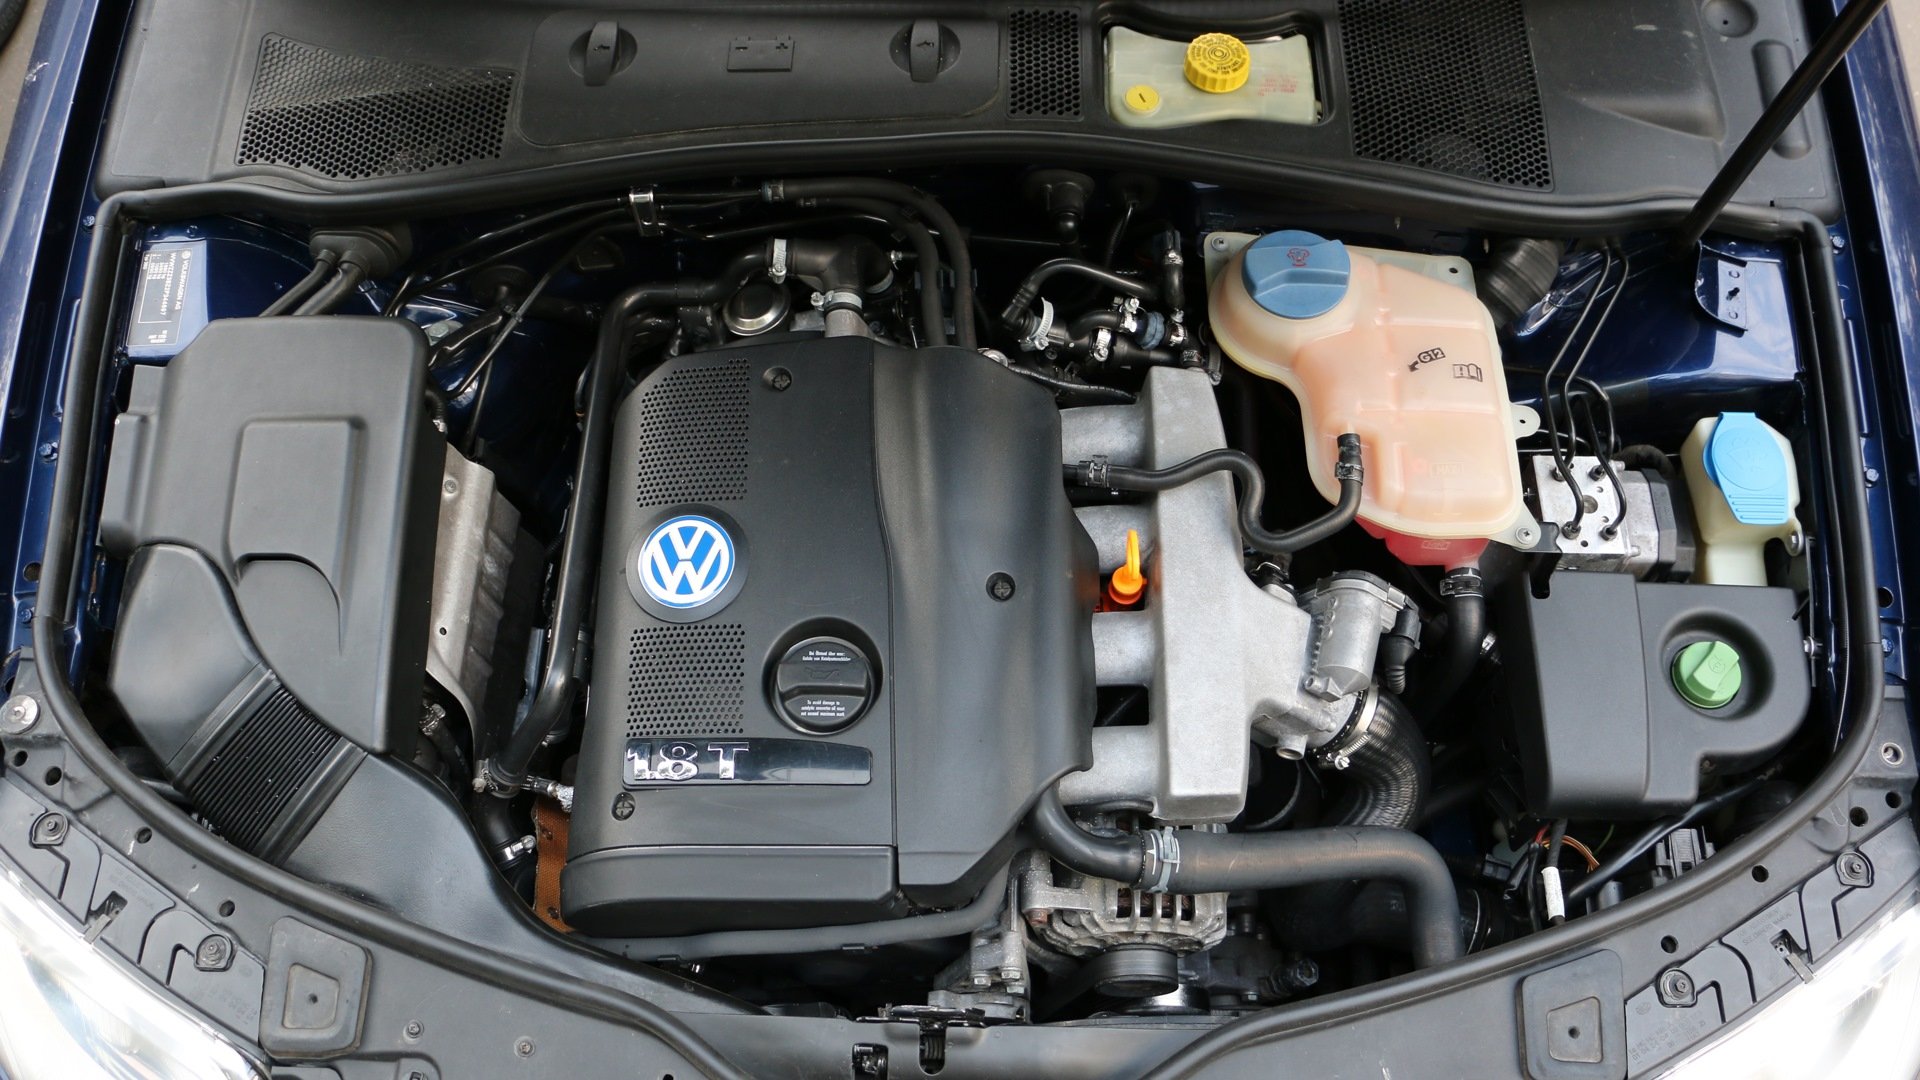 Купить двигатель на фольксваген пассат б5. Пассат b5 1.8 турбо. Volkswagen Passat b5 1.8 турбо. Двигатель Volkswagen Passat b5 1.8 t. Passat b5 двигатель 1.8.